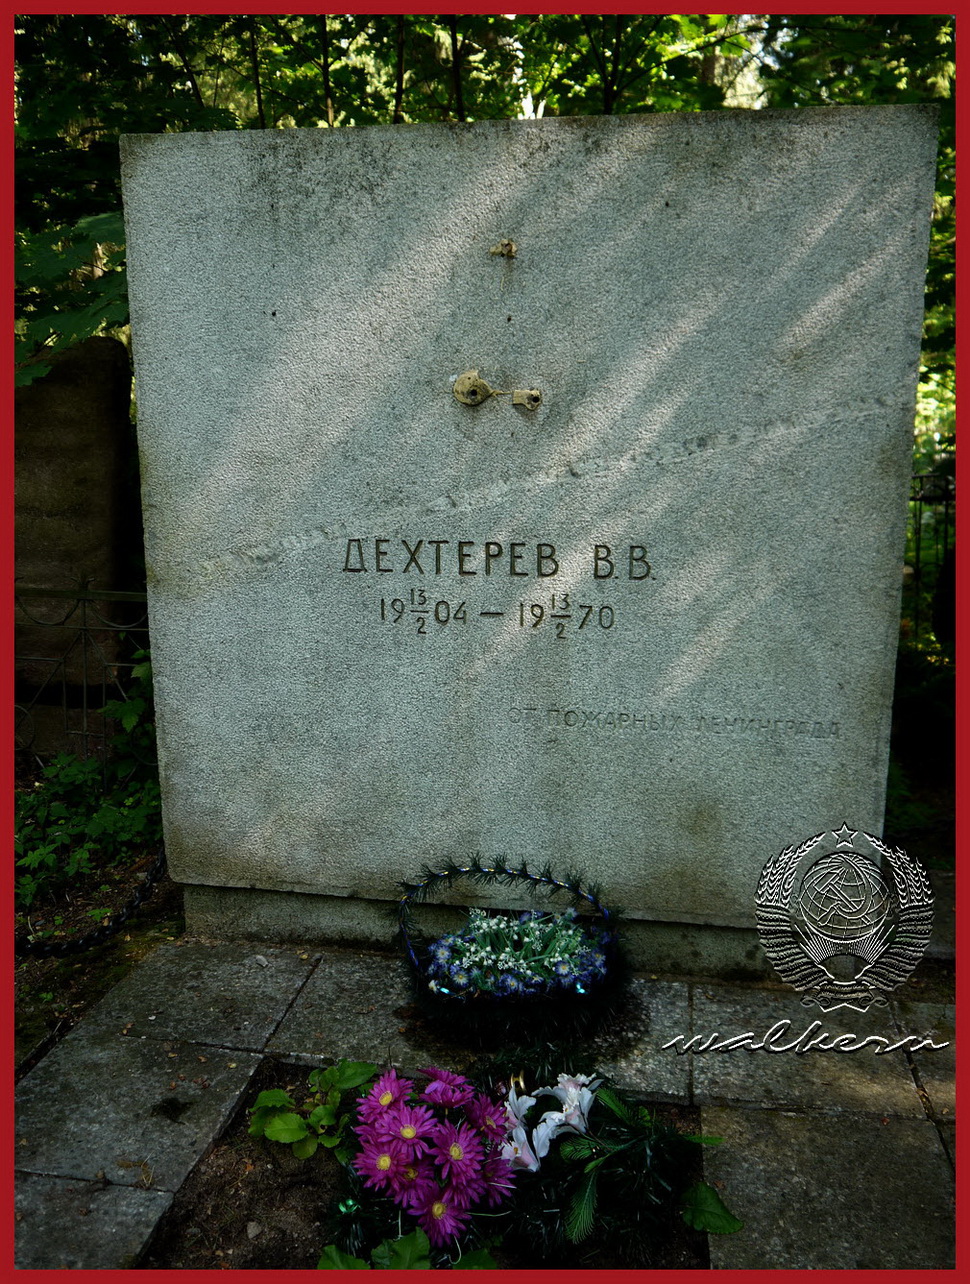 Могила Дехтерева В.В. на Северном кладбище